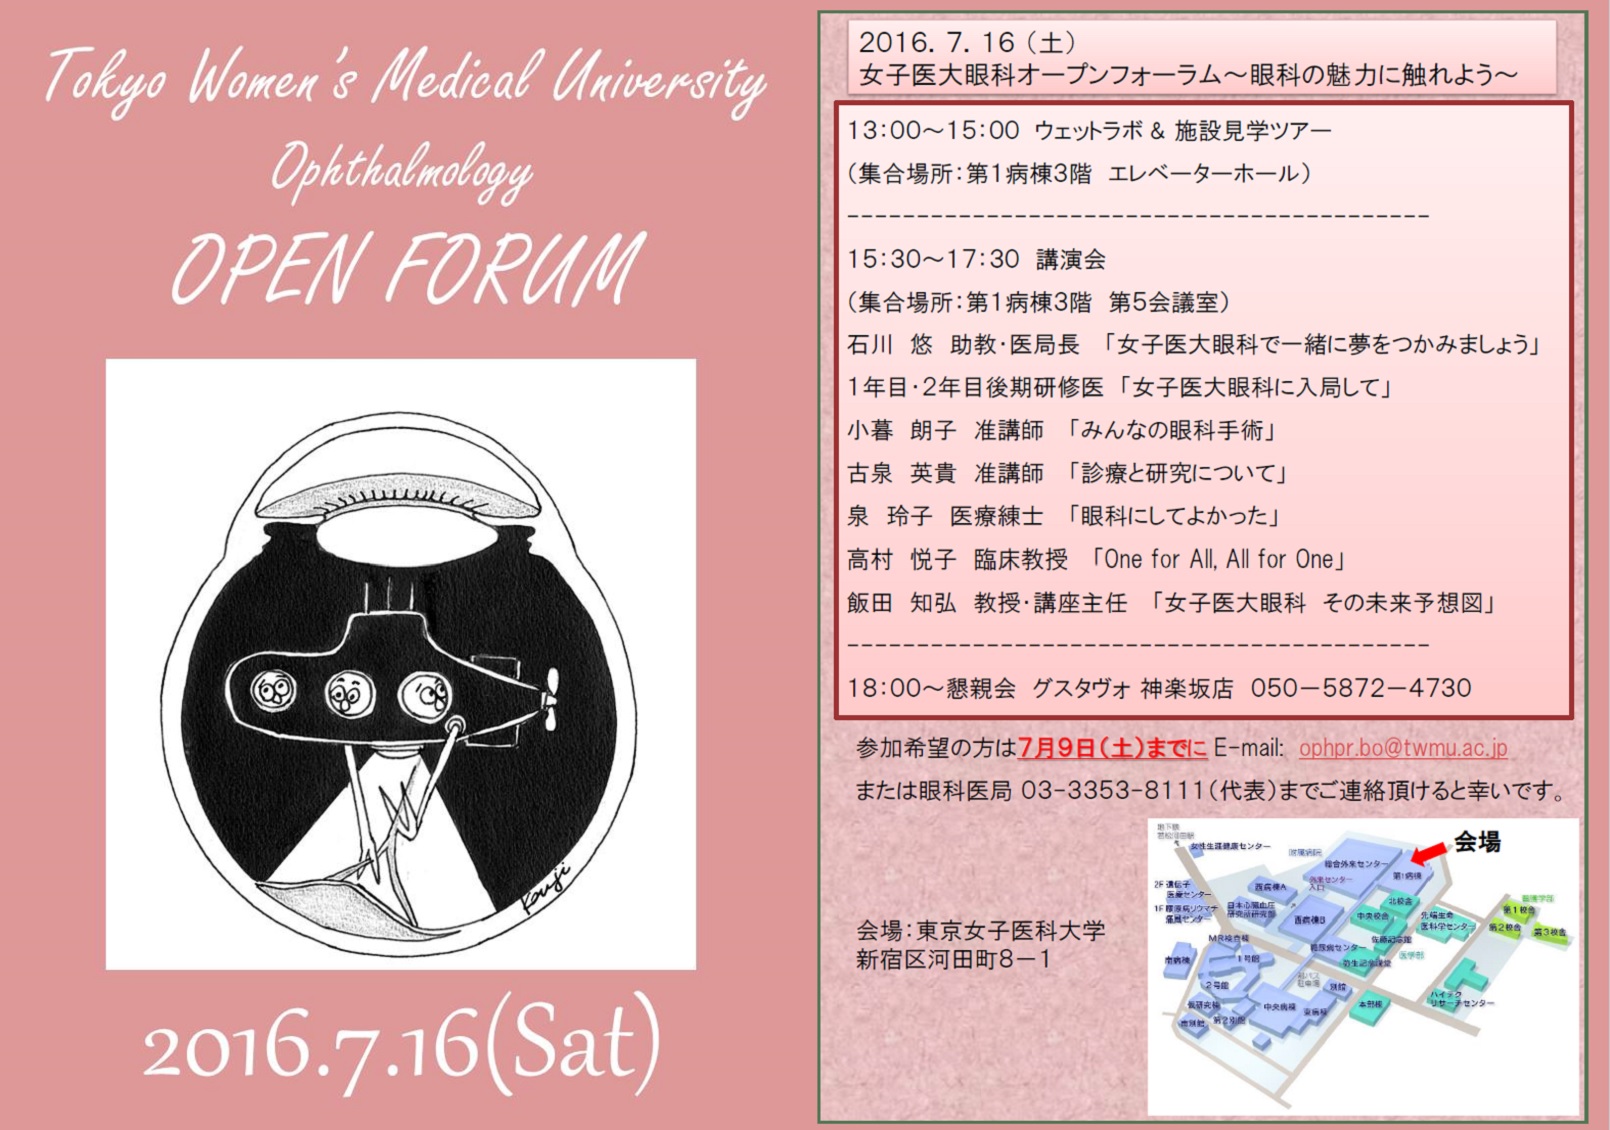 東京女子医大眼科オープンフォーラム2016